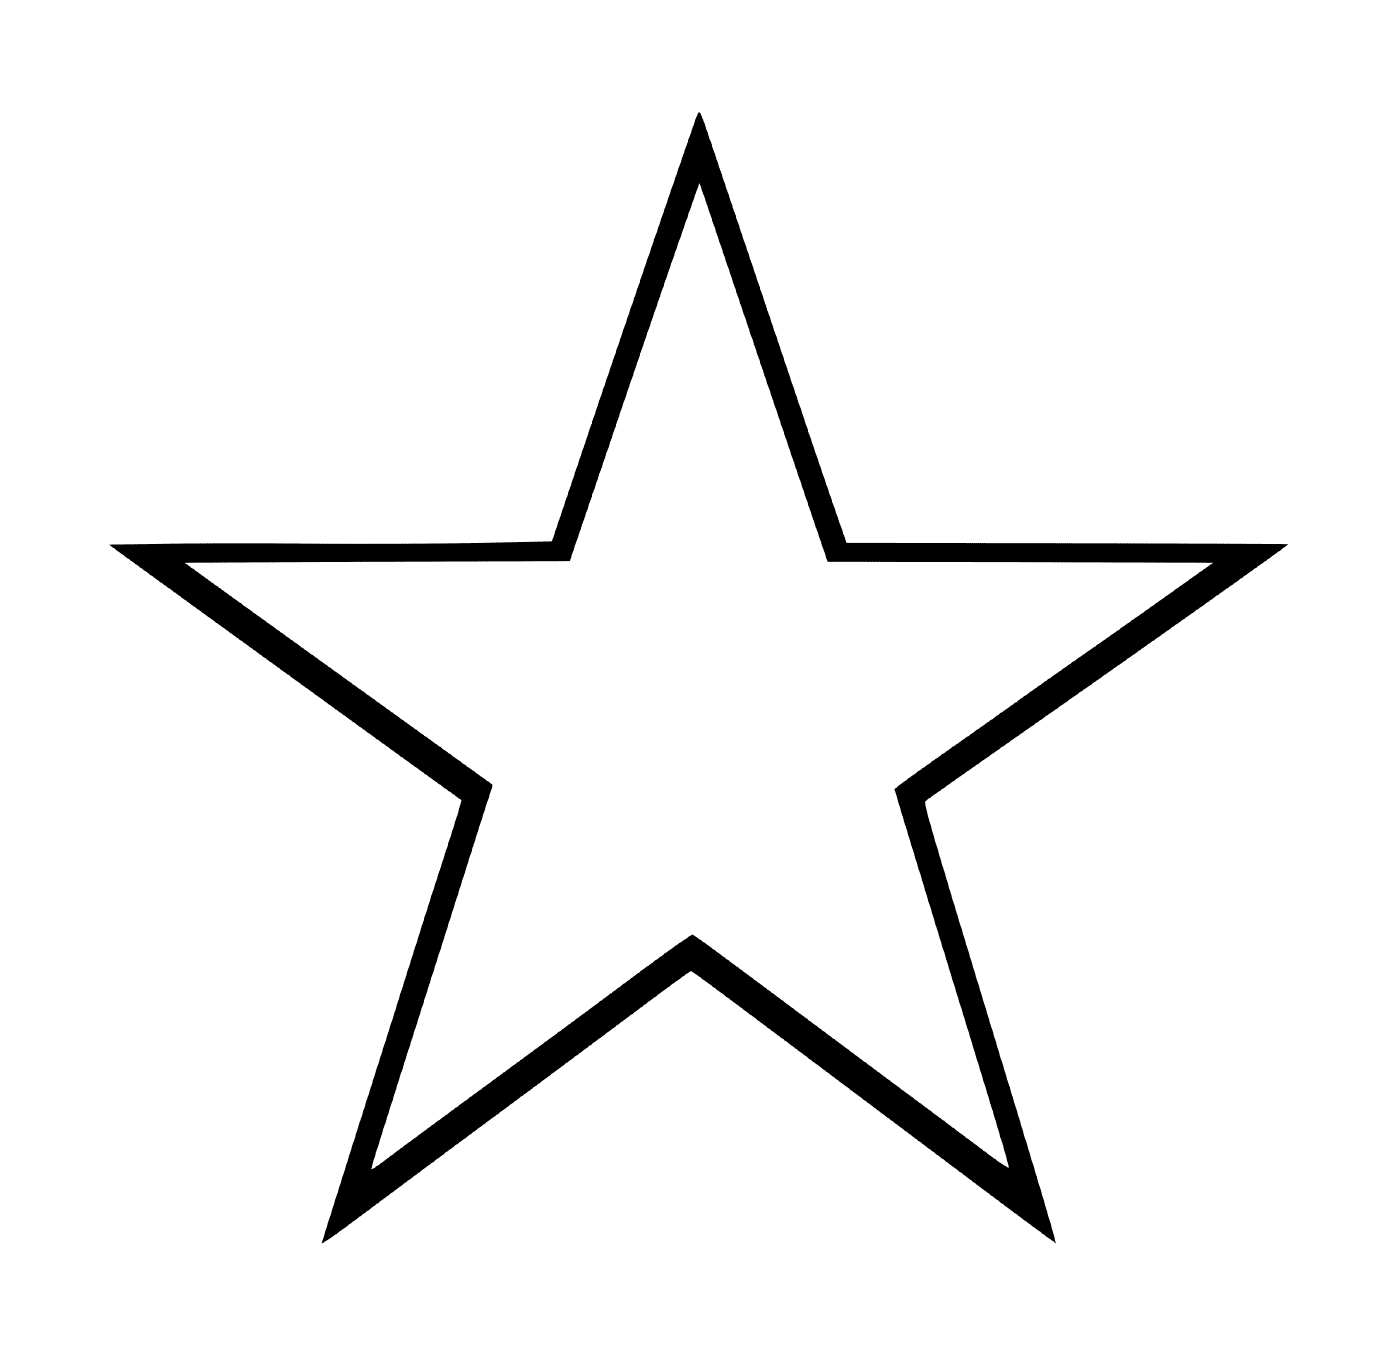   Une étoile facile à dessiner 